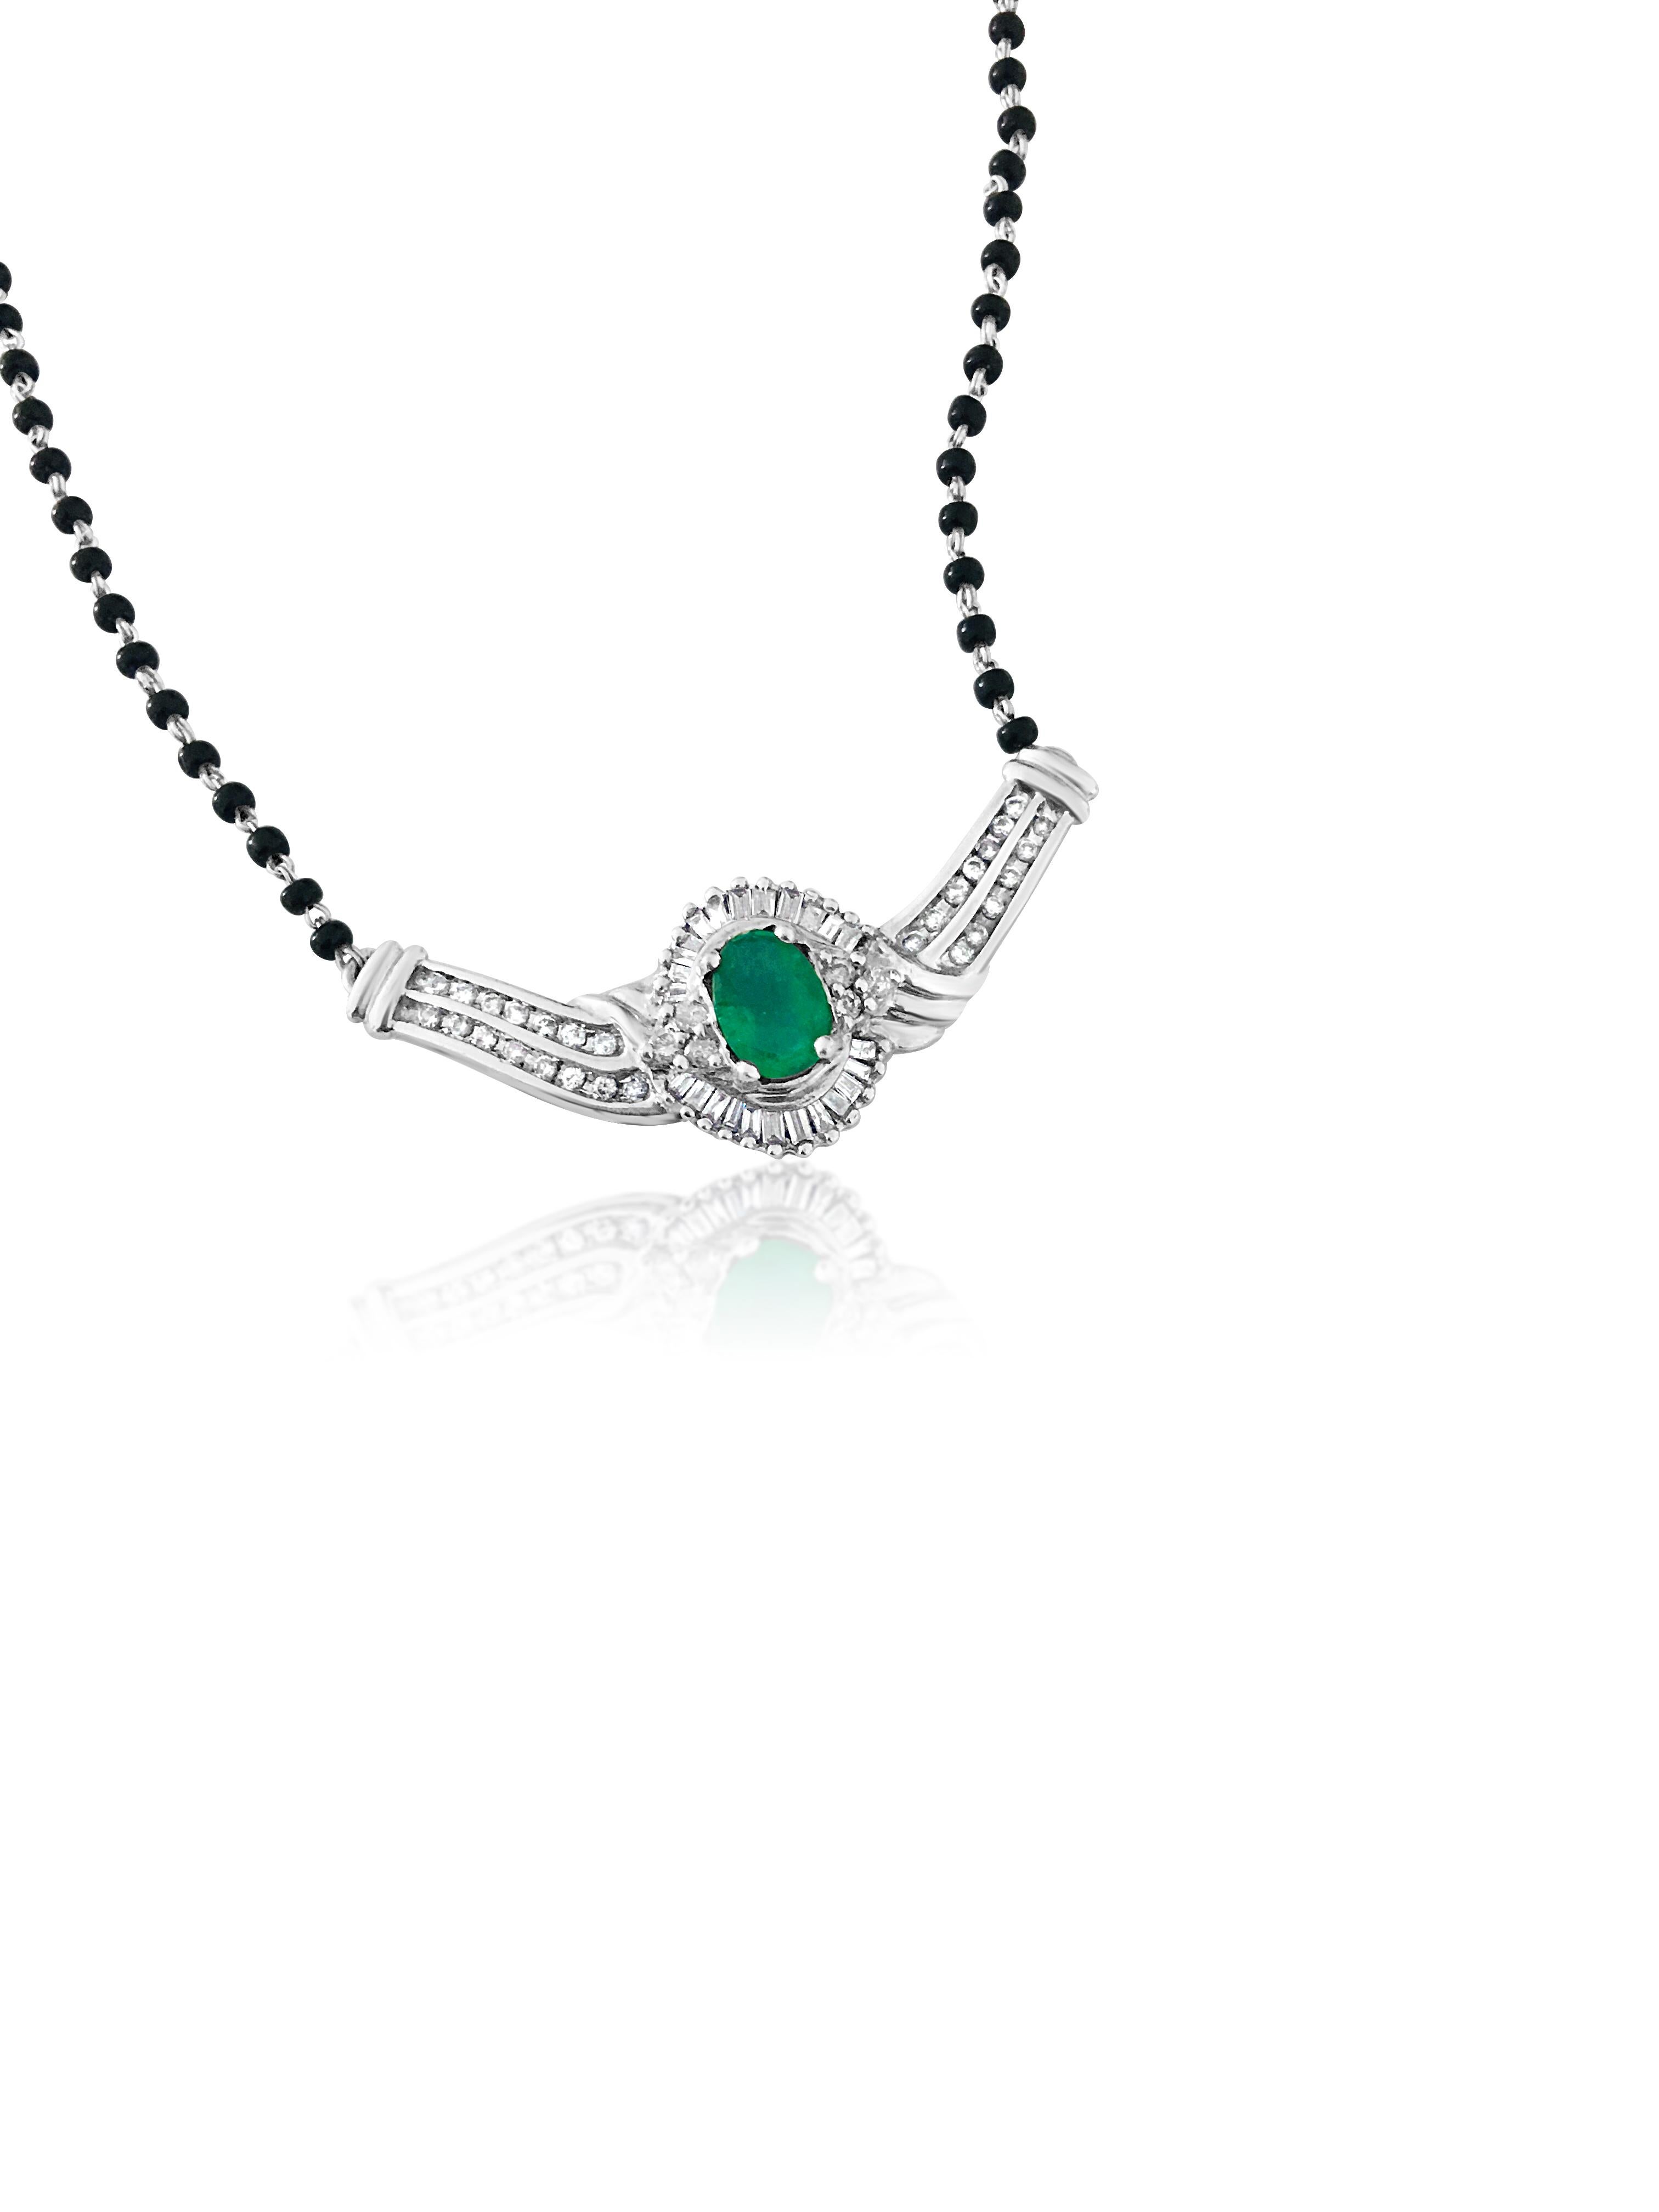 Diese exquisite Halskette rühmt sich eines atemberaubenden kolumbianischen Smaragds von 3,00 Karat im Ovalschliff, der elegant in Zacken aus 14-karätigem Weißgold gefasst ist. Mit insgesamt 1,10 Karat runden Diamanten im Brillant- und